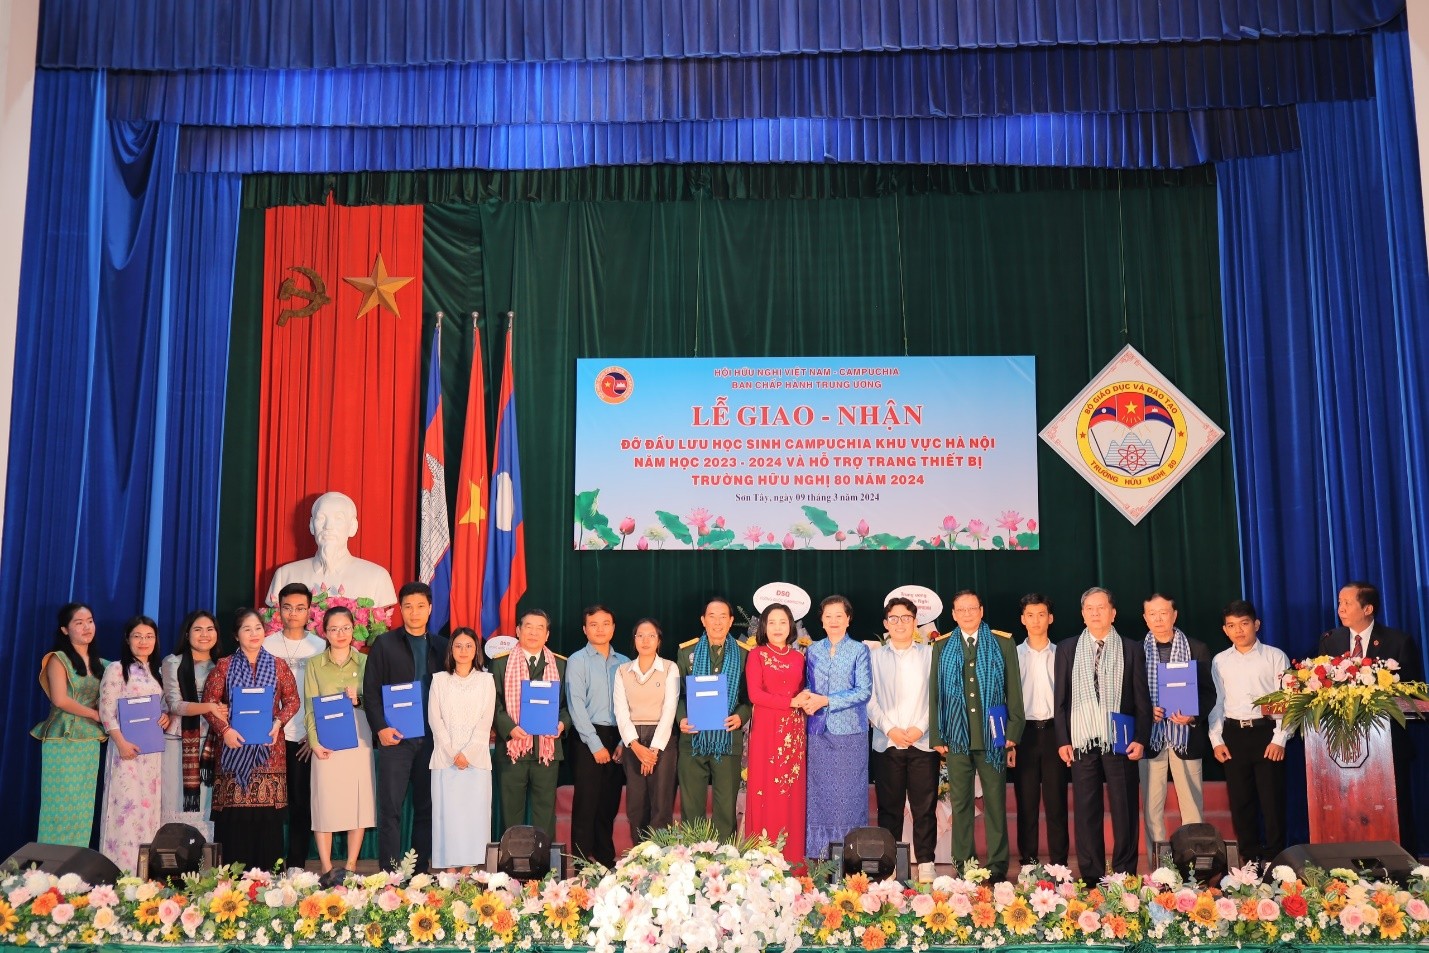 Chị Linh Nhân (thứ sáu, từ trái qua) cùng các tập thể, cá nhân nhận Quyết định giao nhận đỡ đầu sinh viên Campuchia năm học 2023-2024